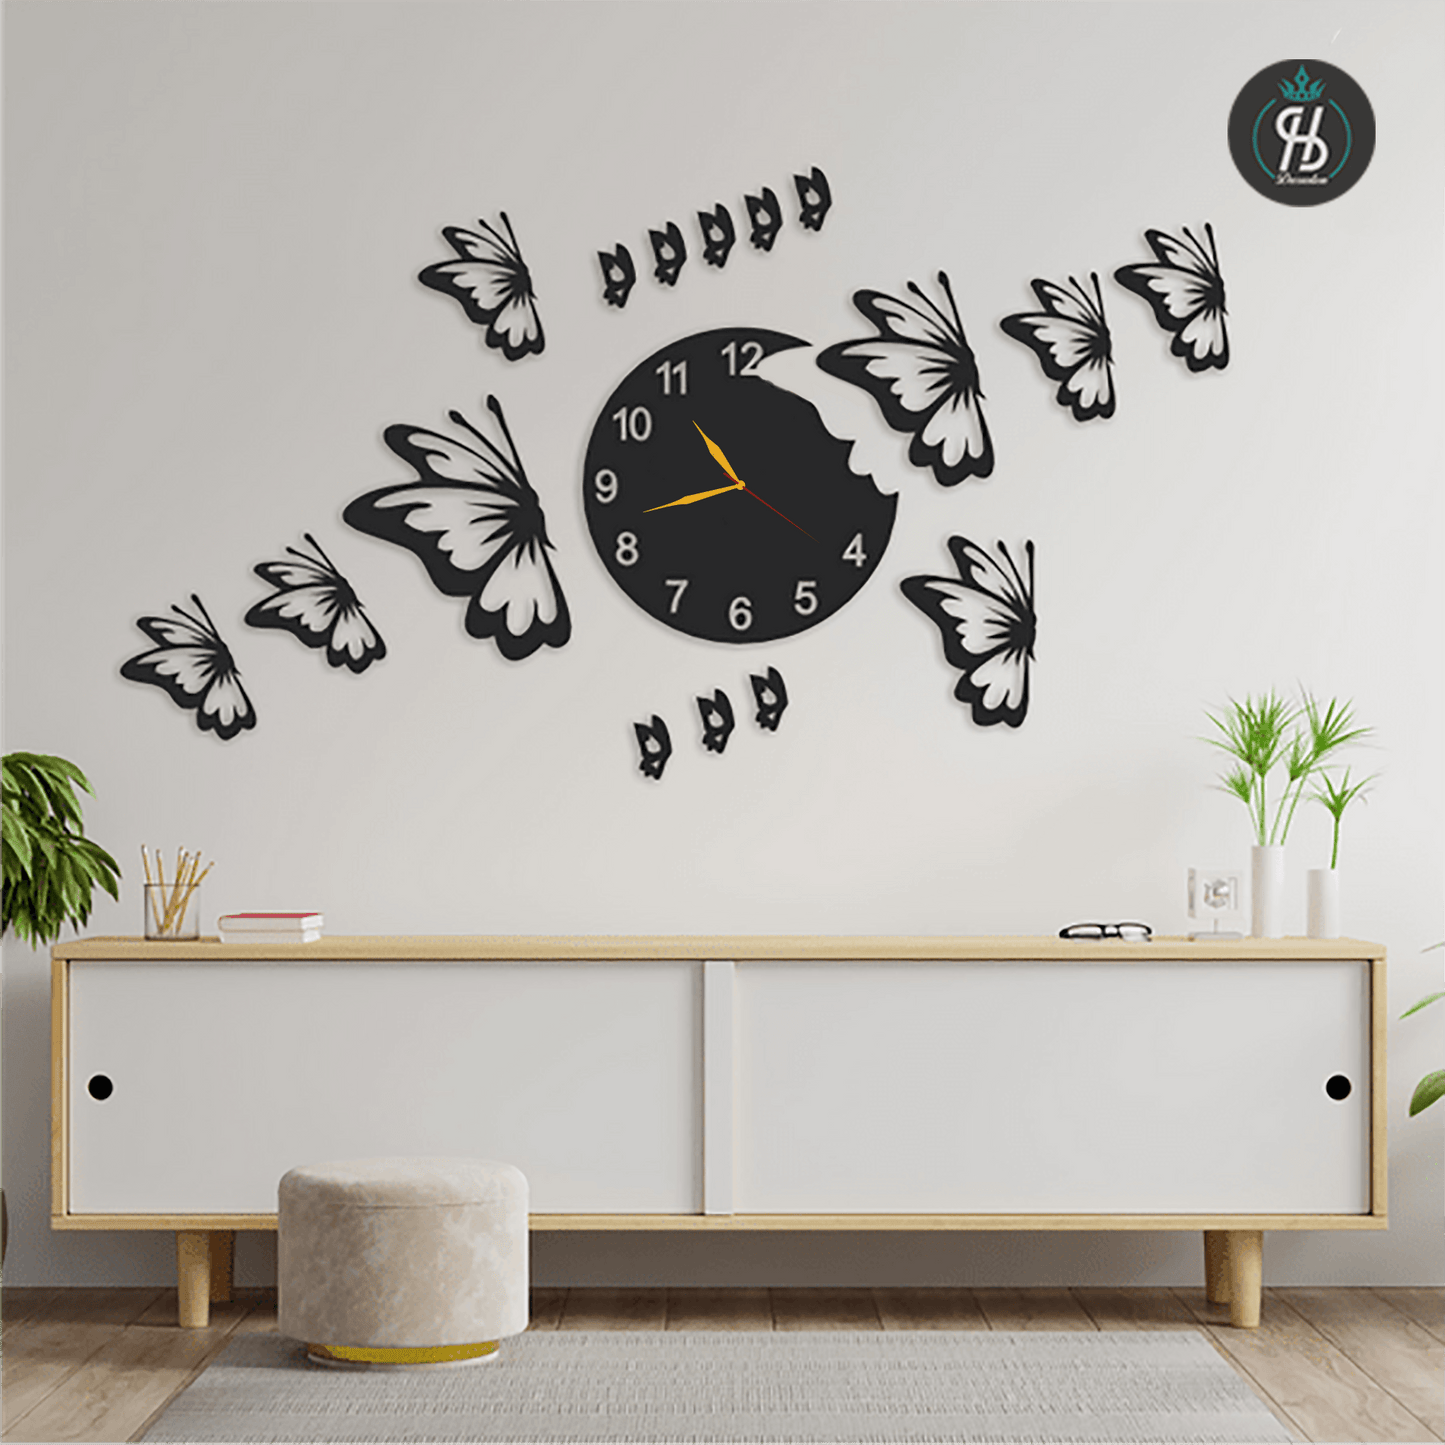 Butterflies Big Wall Clock